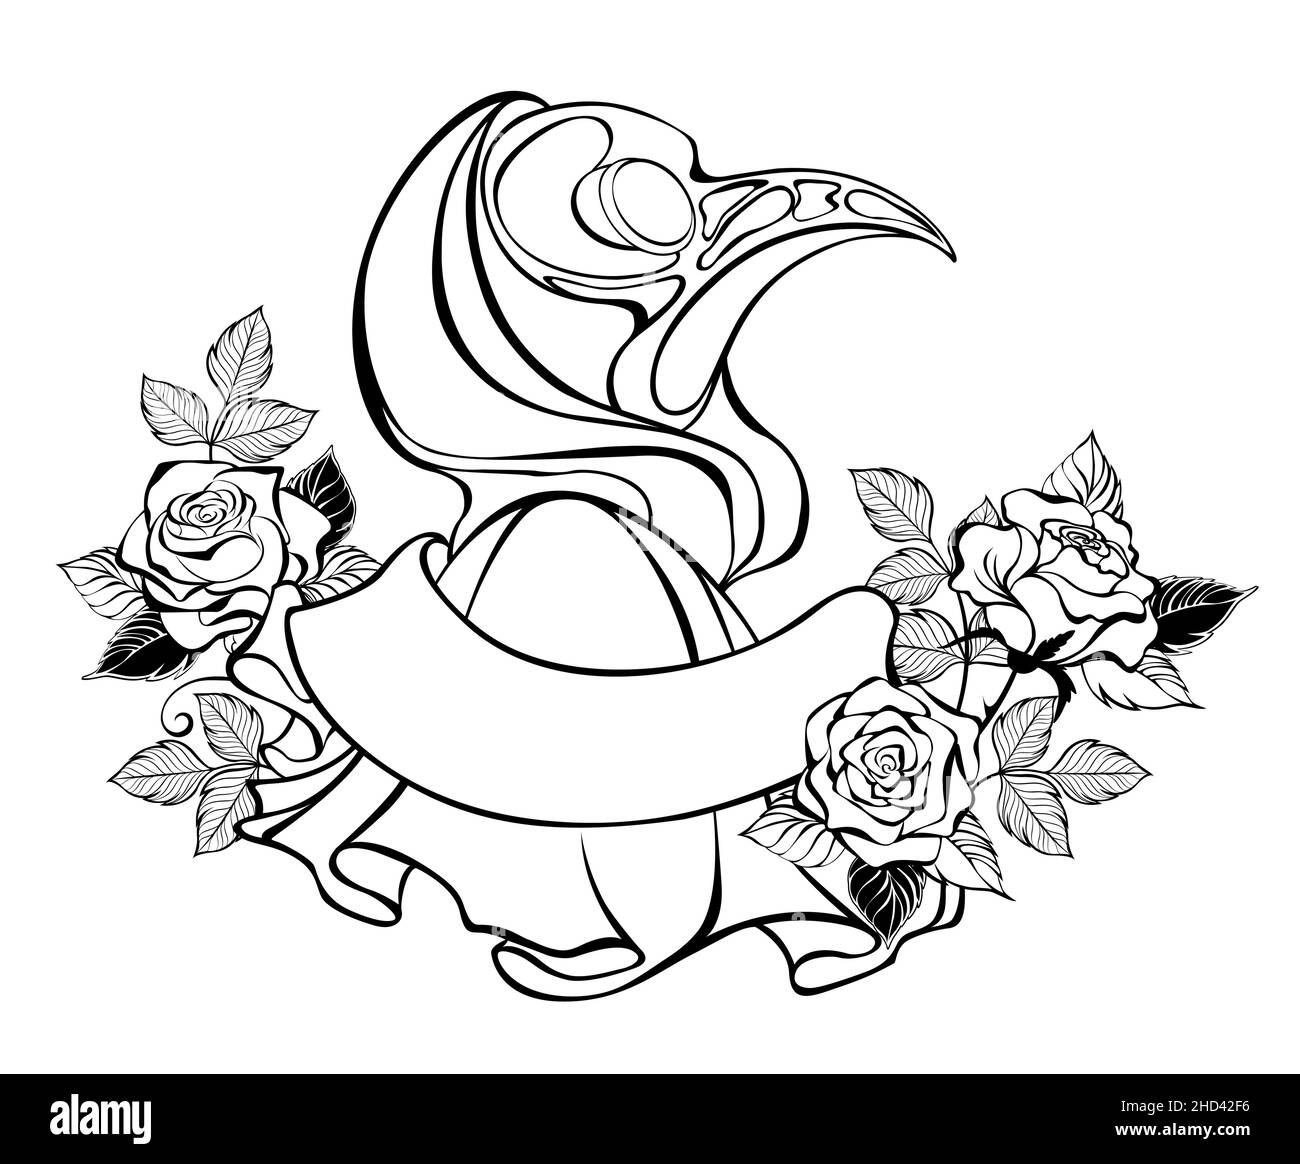 Contorno, dibujo artístico del doctor de la peste que usa el casquillo con rosas florecientes, en fondo blanco. Diseño en halloween. Ilustración del Vector